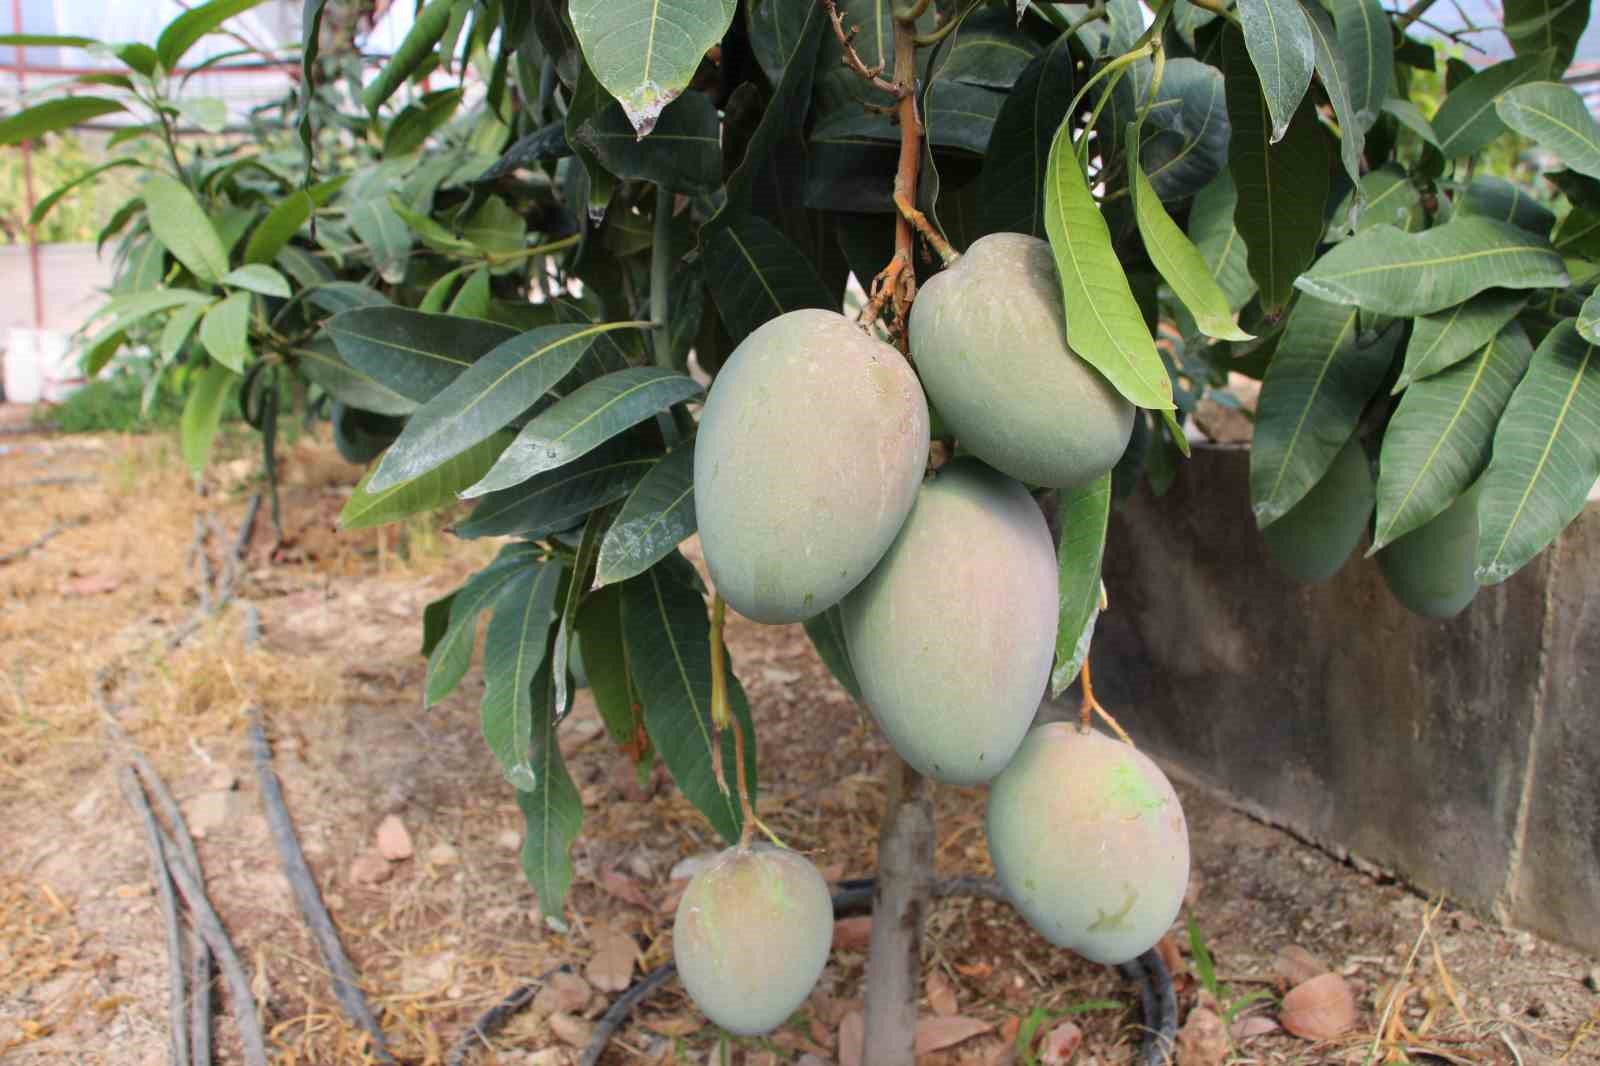 Domatesleri söktü, serasını mango bahçesine dönüştürüp 300 yıllık yatırım yaptı